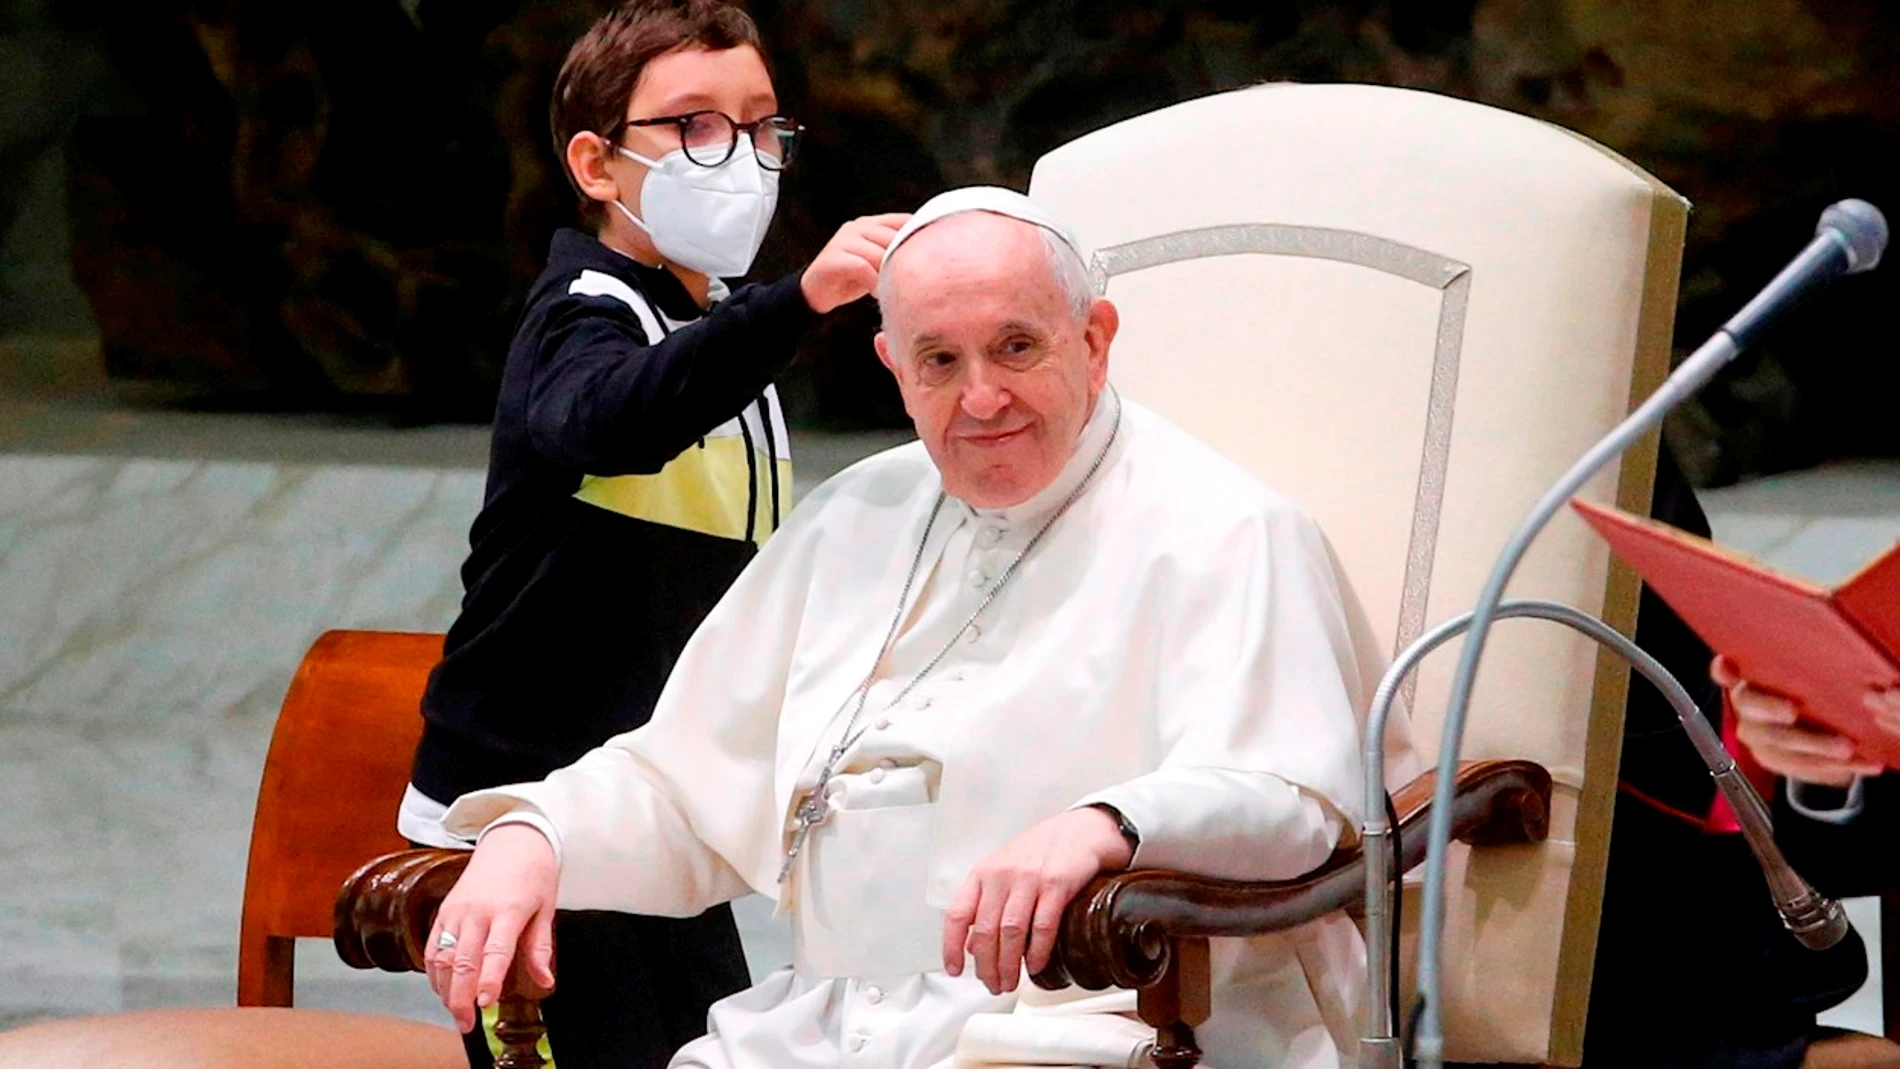 Un niño se convierte en protagonista en una audiencia general del Papa por intentar 'robarle' el gorro al Sumo Pontífice